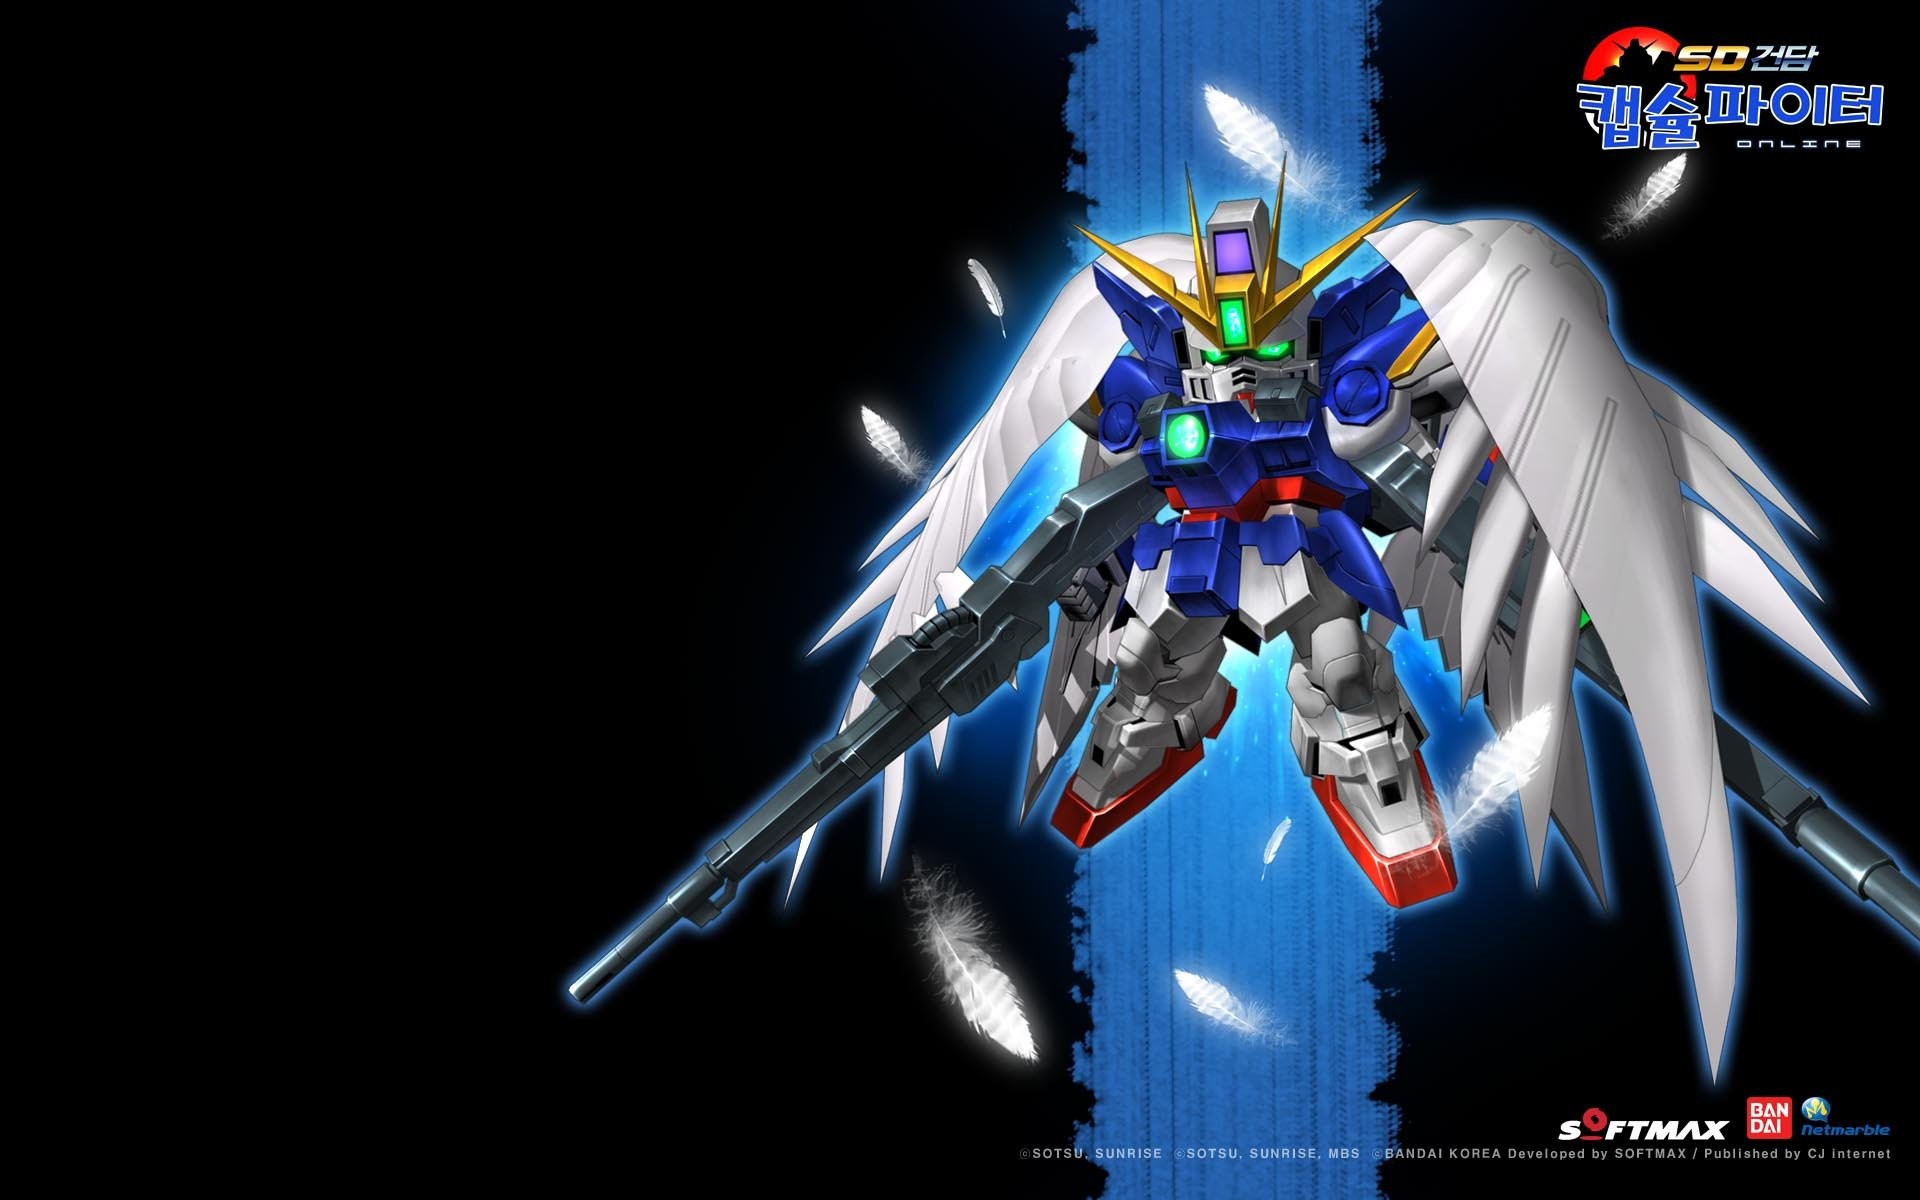 SD Gundam Capsule Fighter Online sci-fi shooter tps action mmo fighhting  1gcfo SDGO mecha wallpaper | | 657182 | WallpaperUP